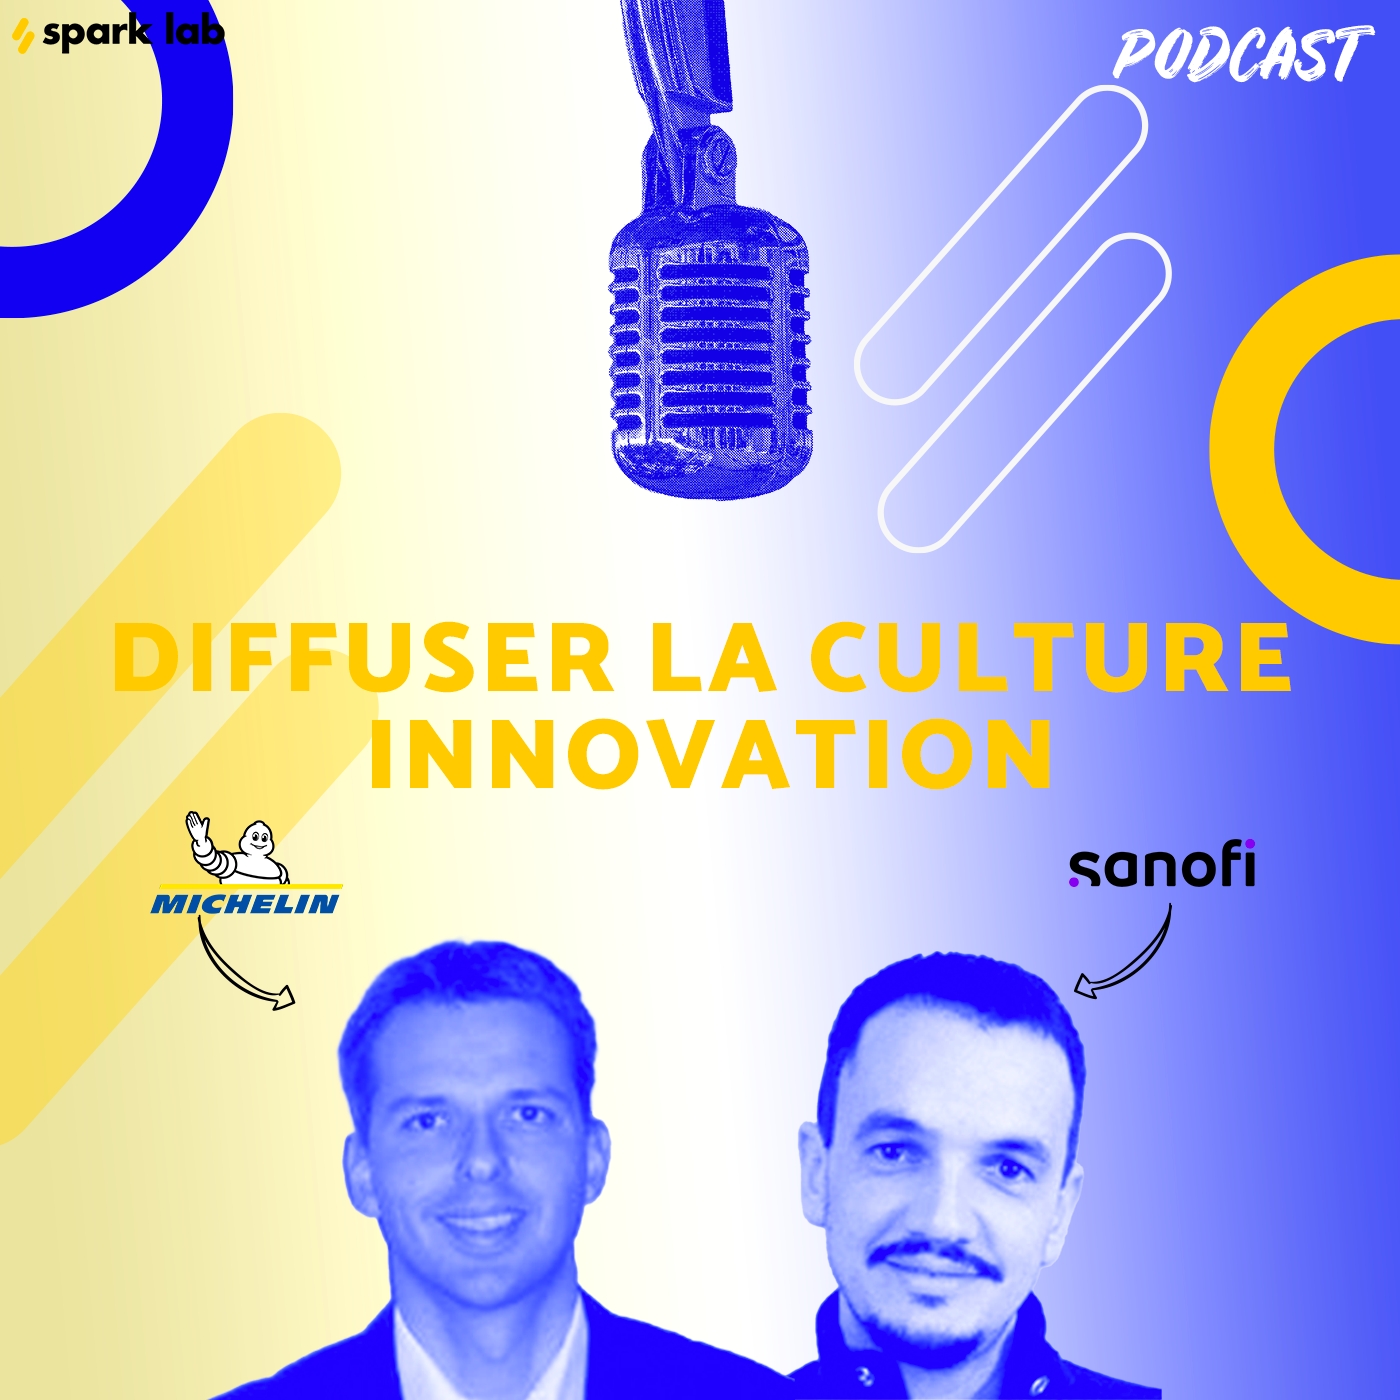 Diffuser la culture innovation avec le témoignage de Christophe PEYSSON de Michelin et Sylvain GRIVEL de Sanofi grâce au podcast